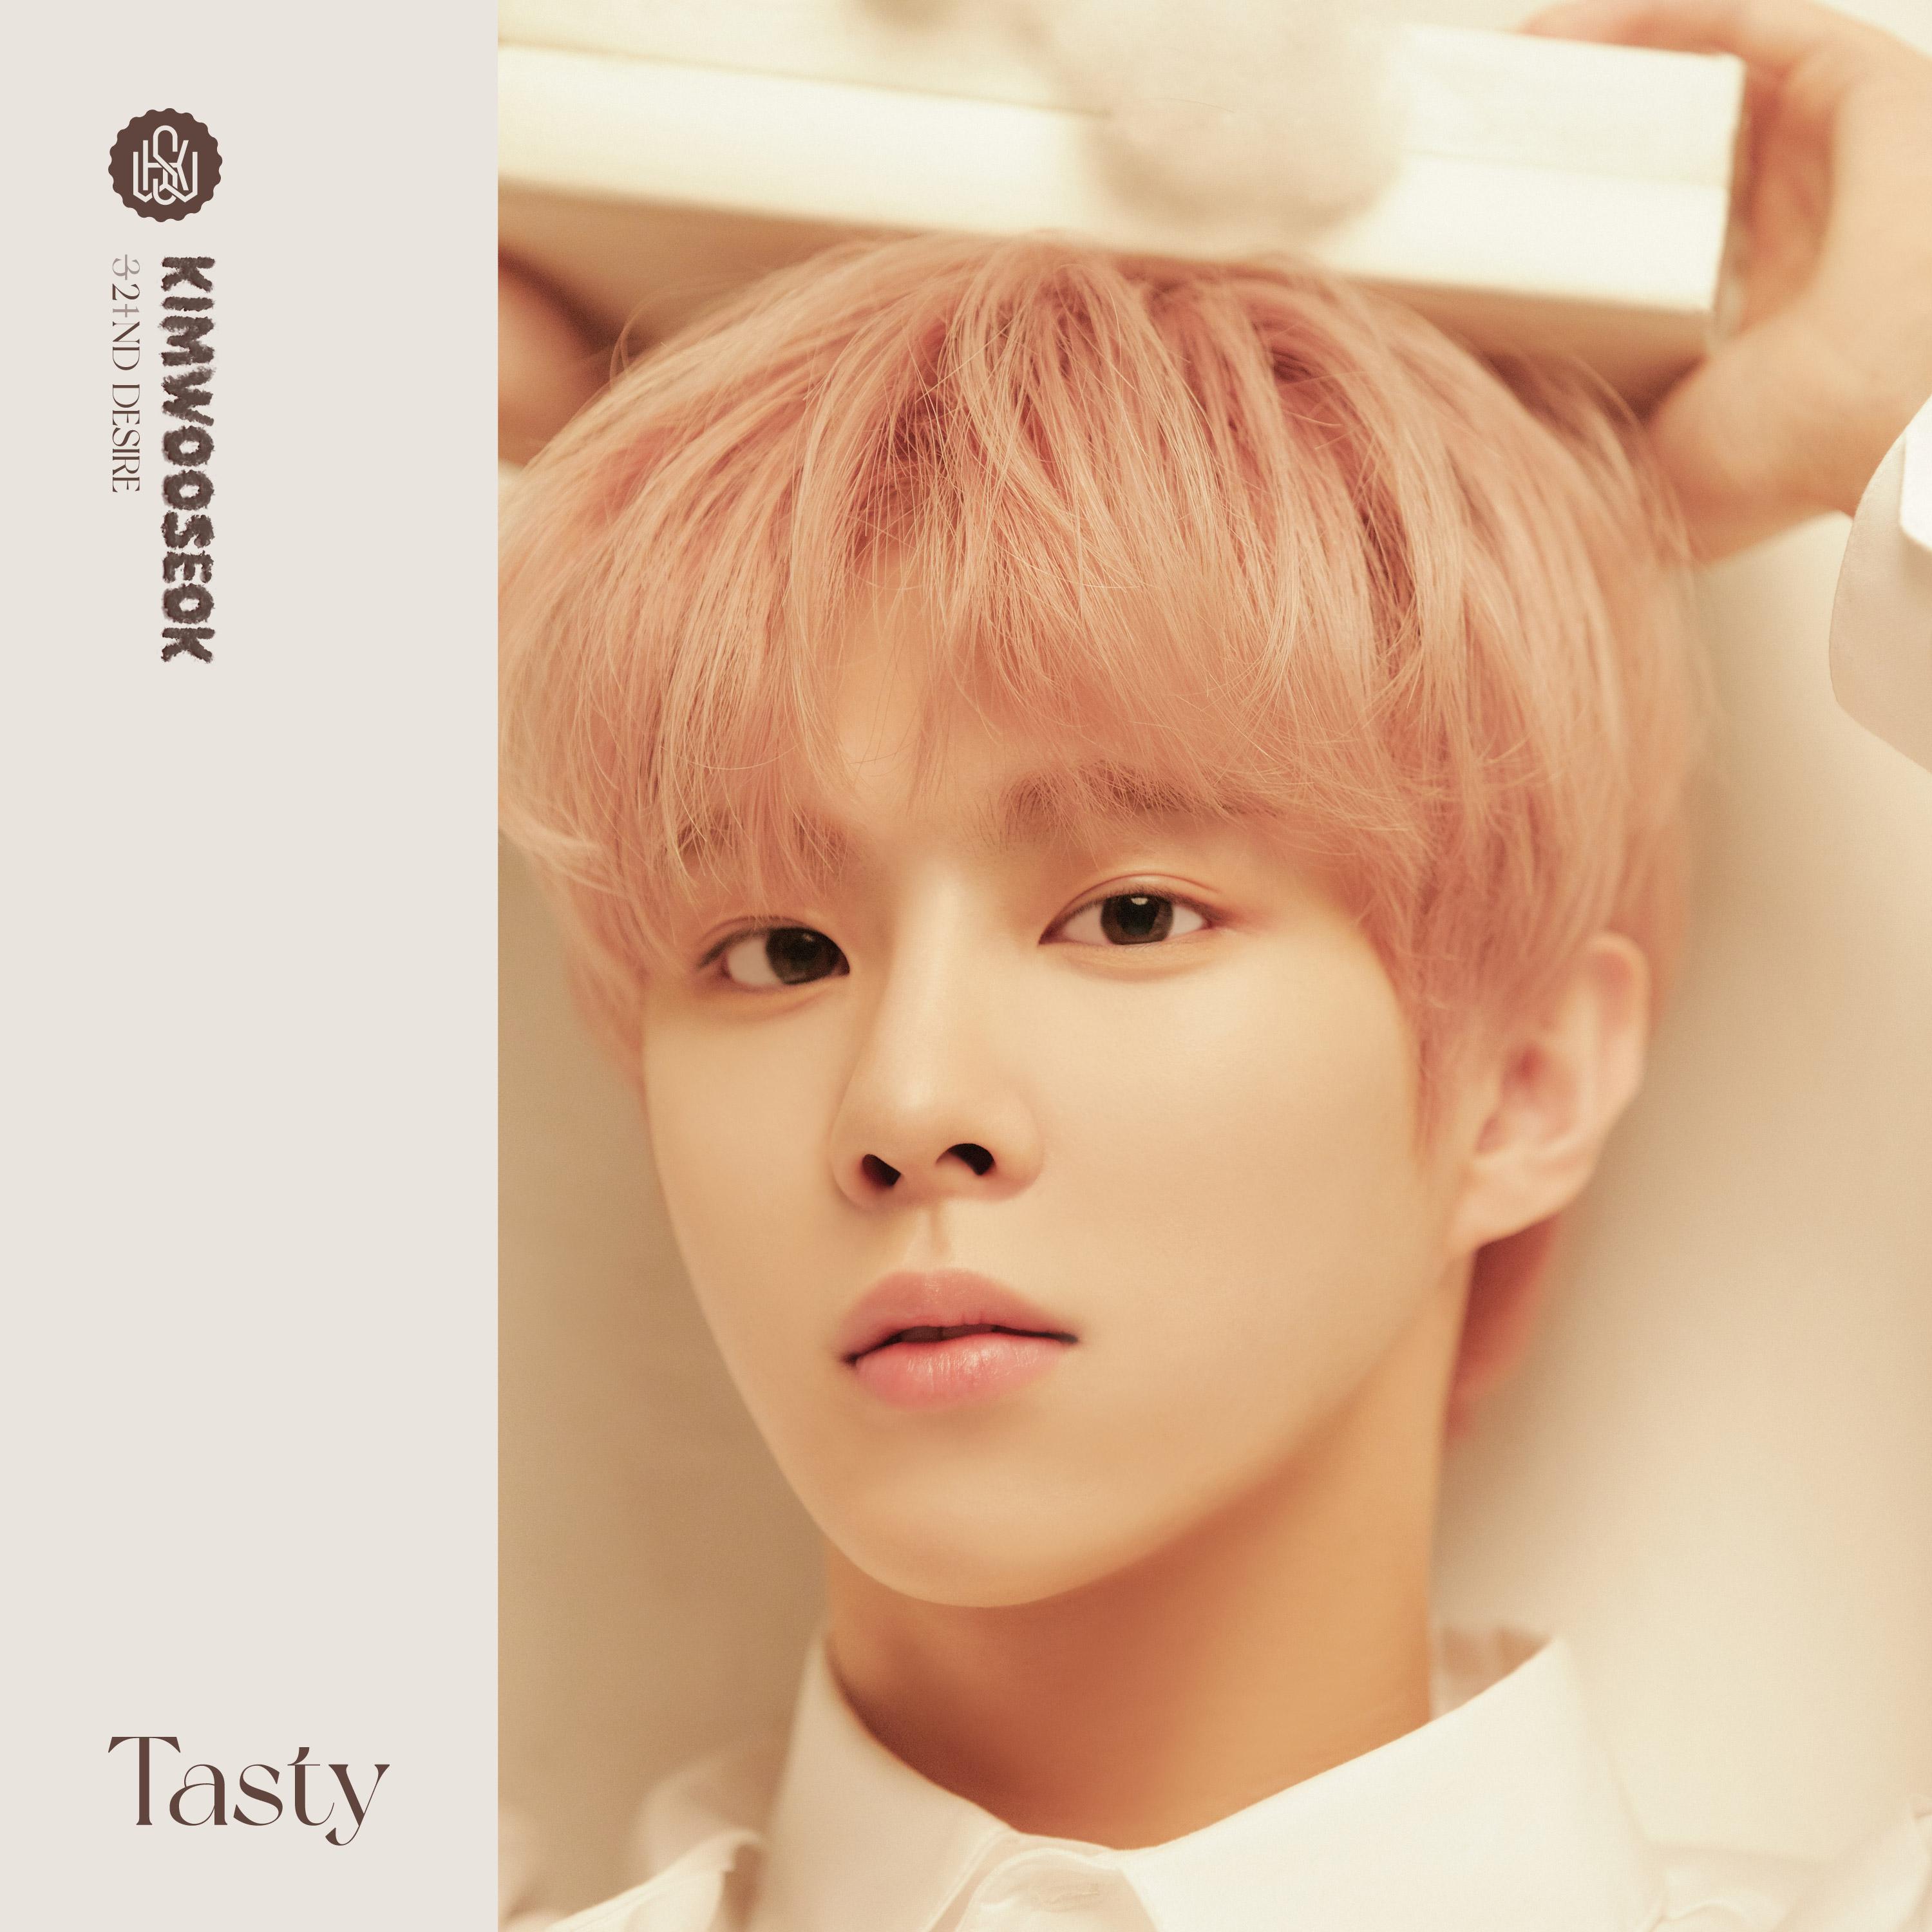 Next歌词 歌手金宇硕-专辑2ND DESIRE [TASTY]-单曲《Next》LRC歌词下载